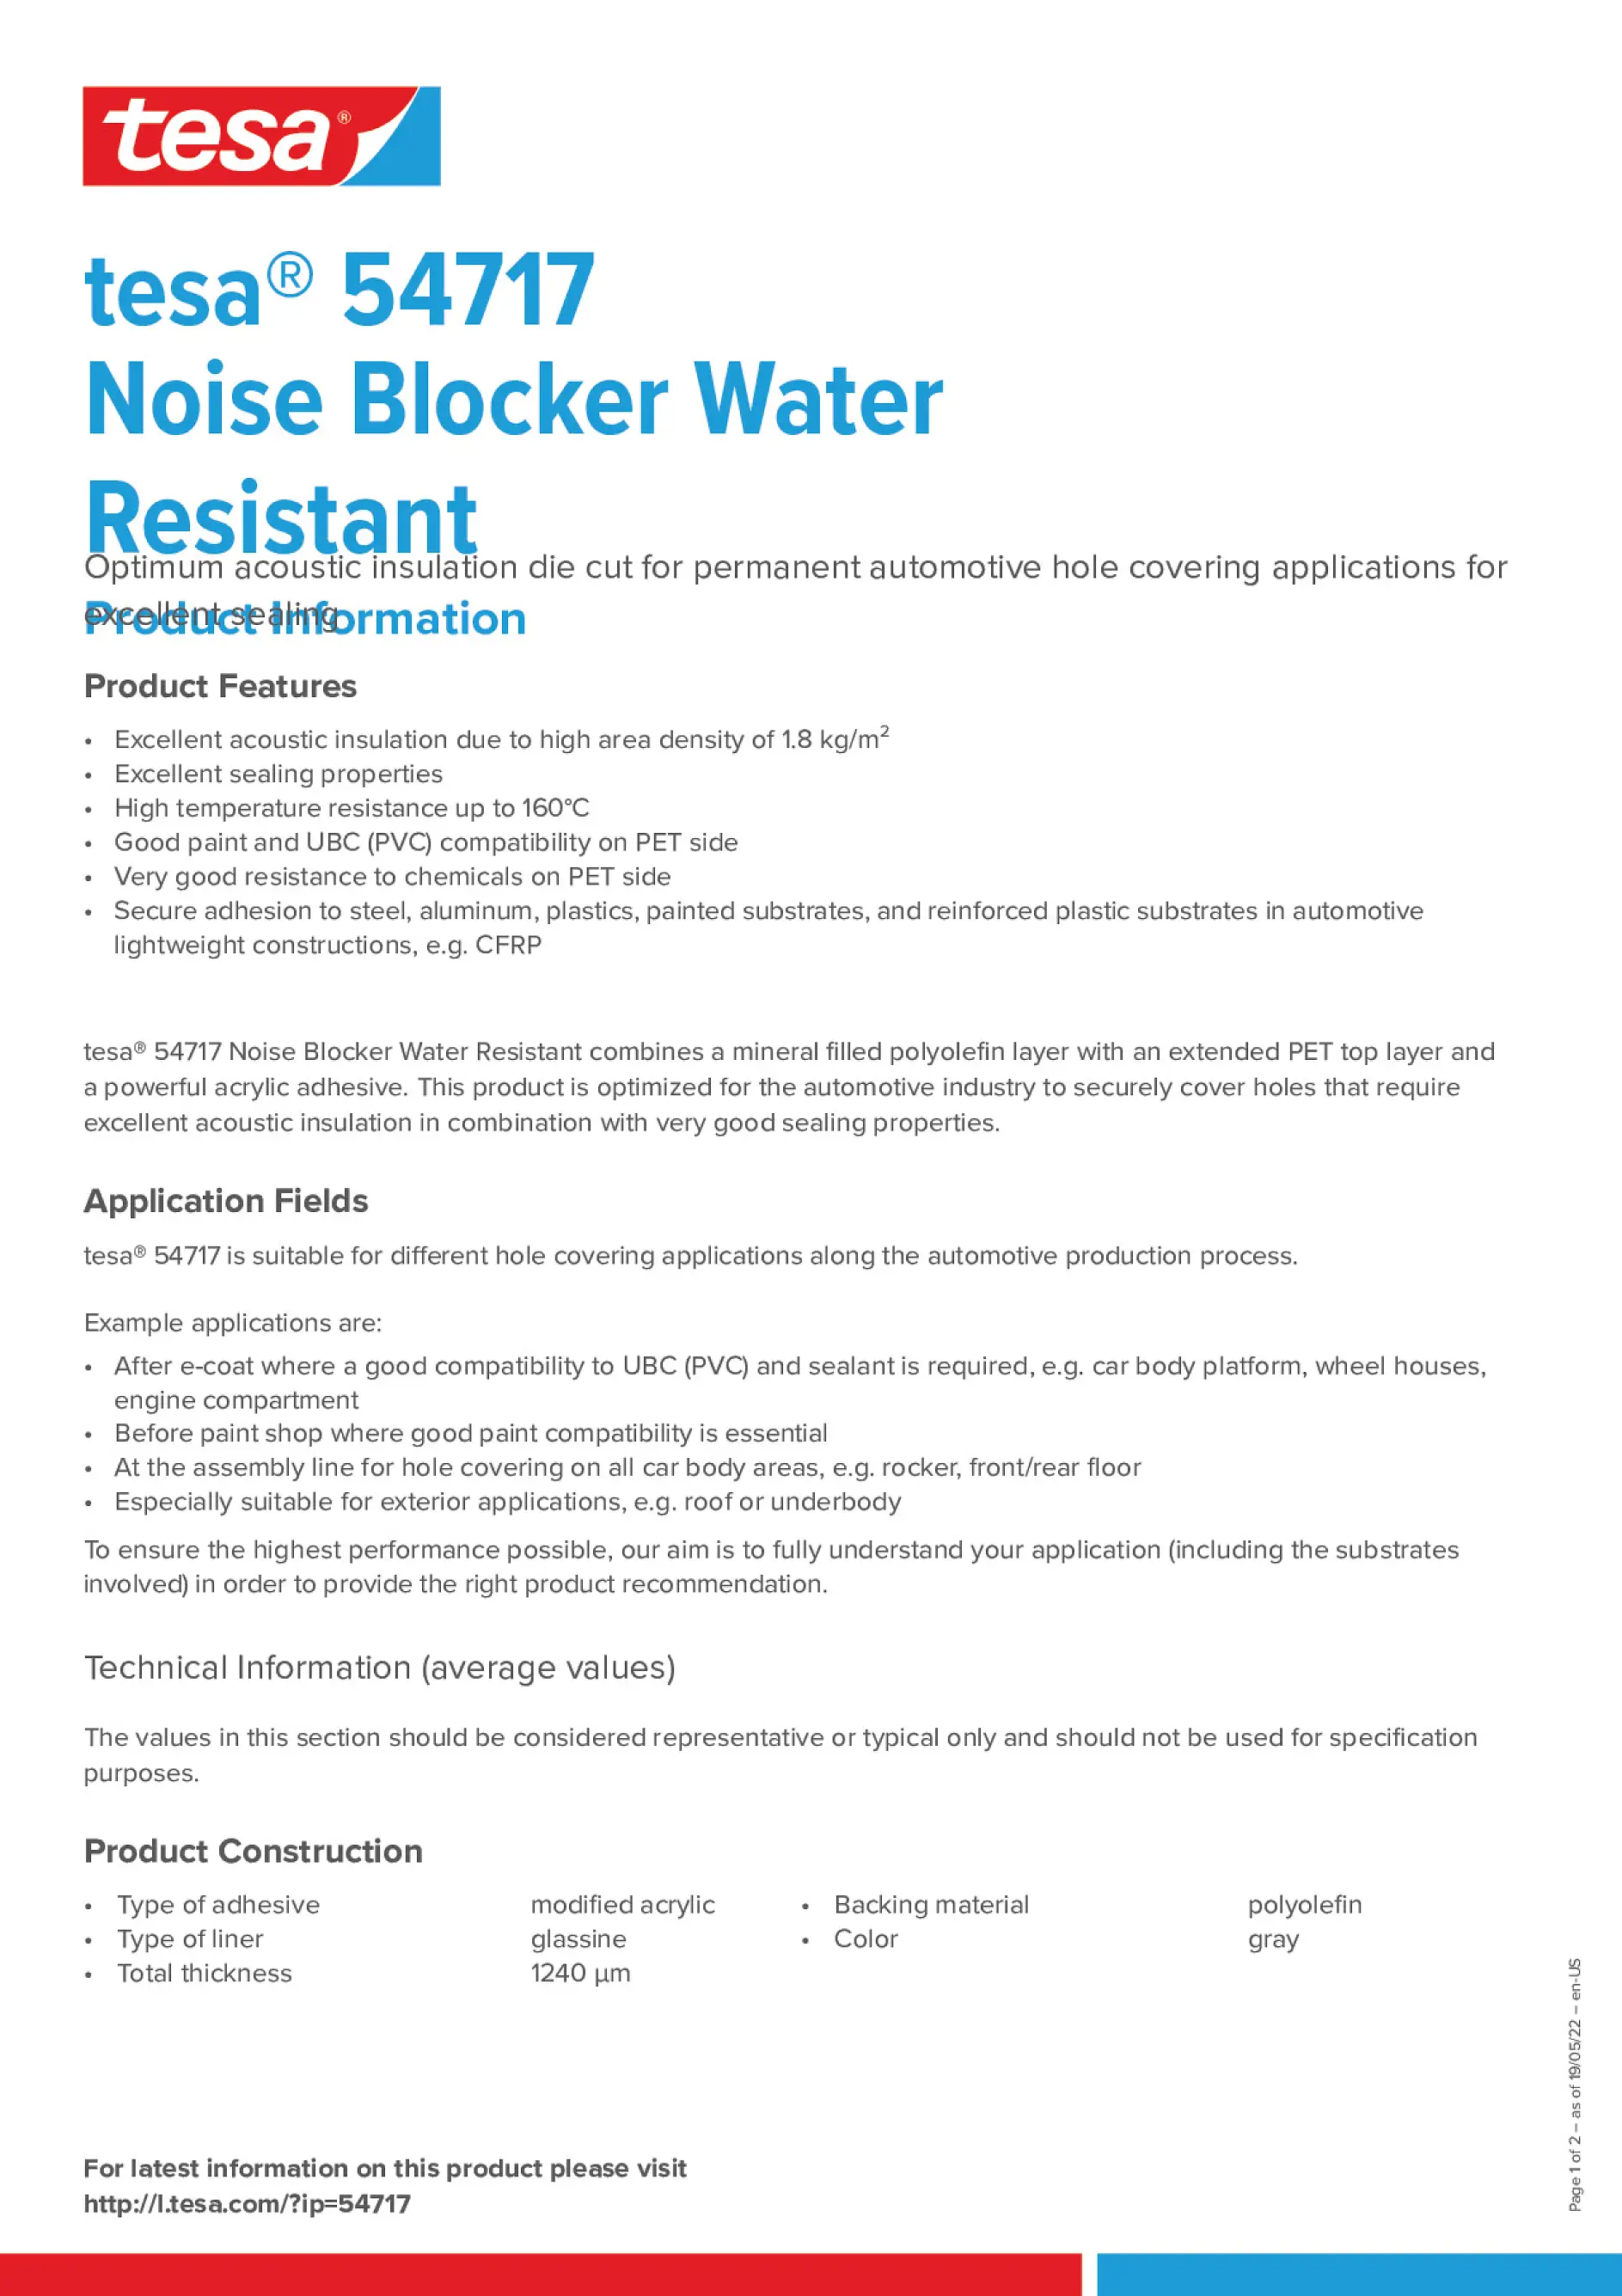 tesa_54717_Noise_Blocker_Water_Resistant_en-US